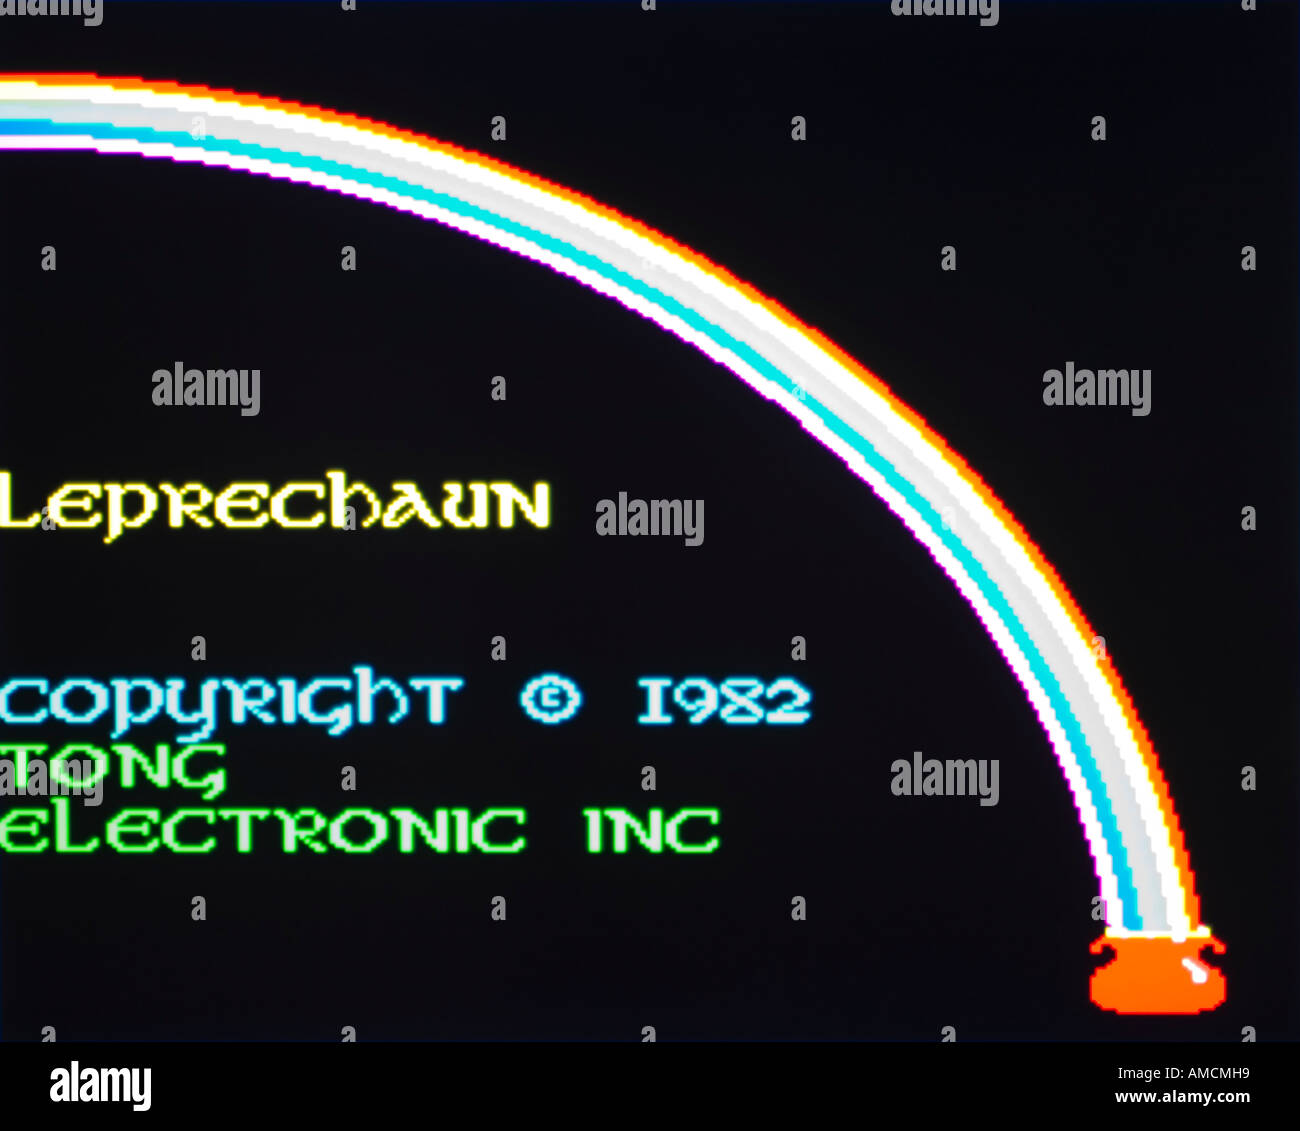 Leprechaun Tong elektronische Inc 1982 Vintage Arcade Videospiel Screenshot - nur zur redaktionellen Nutzung Stockfoto